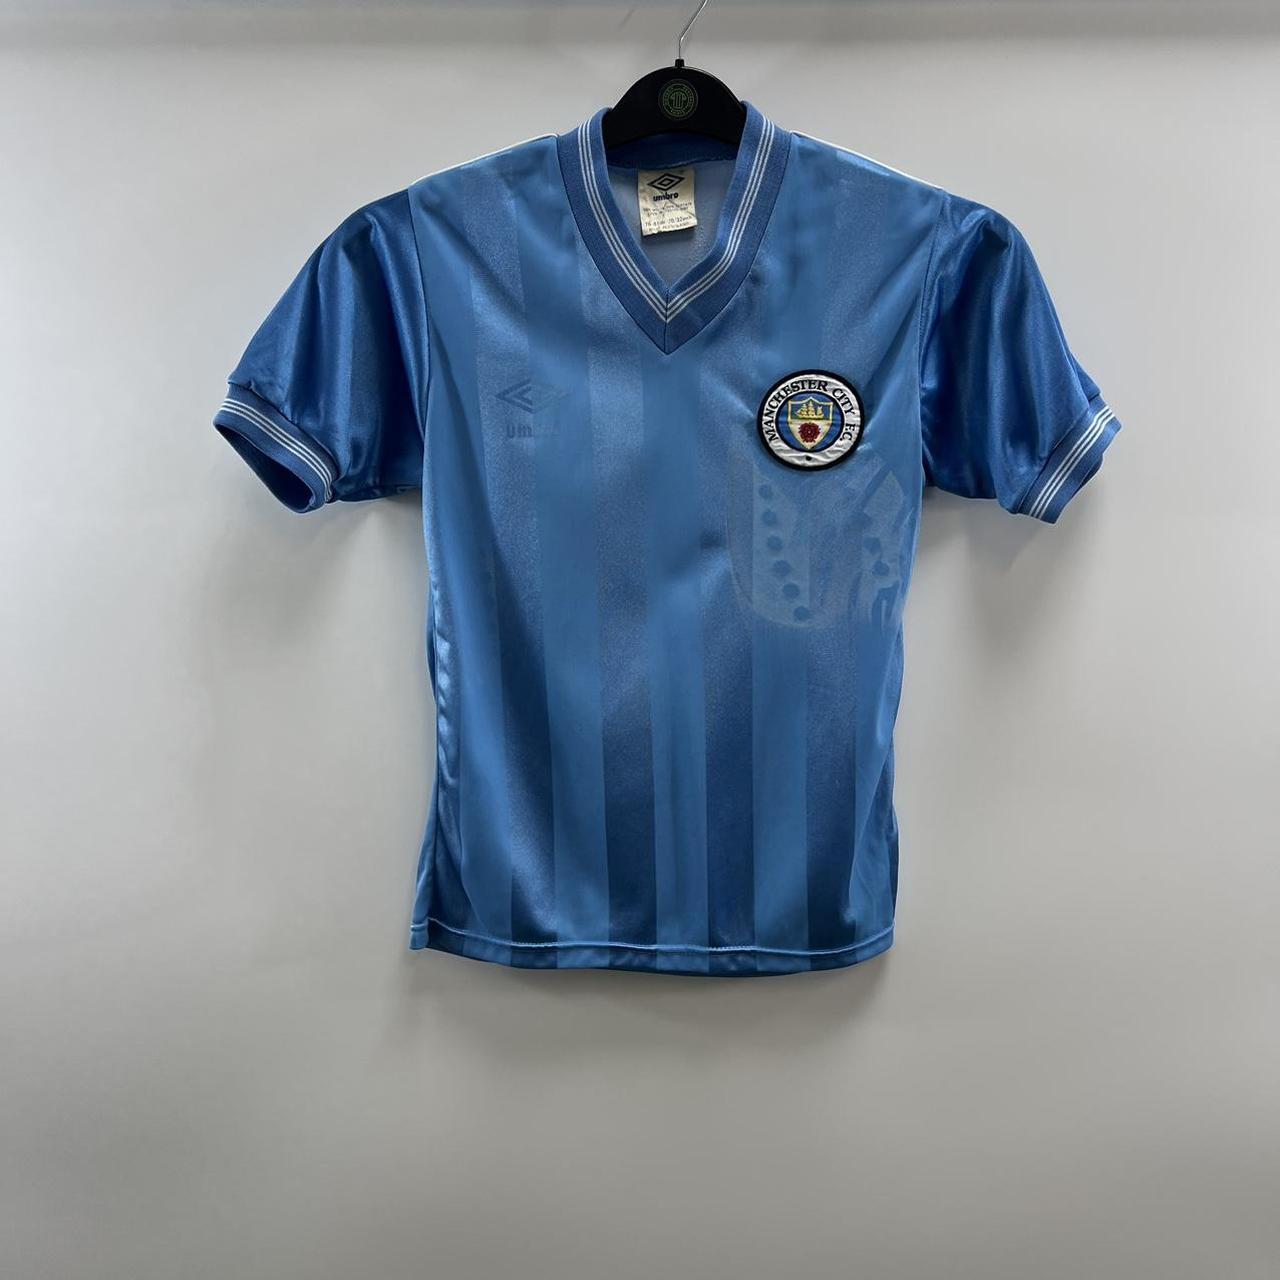 Manchester City Home Football Shirt 1983/85 Large... - Depop